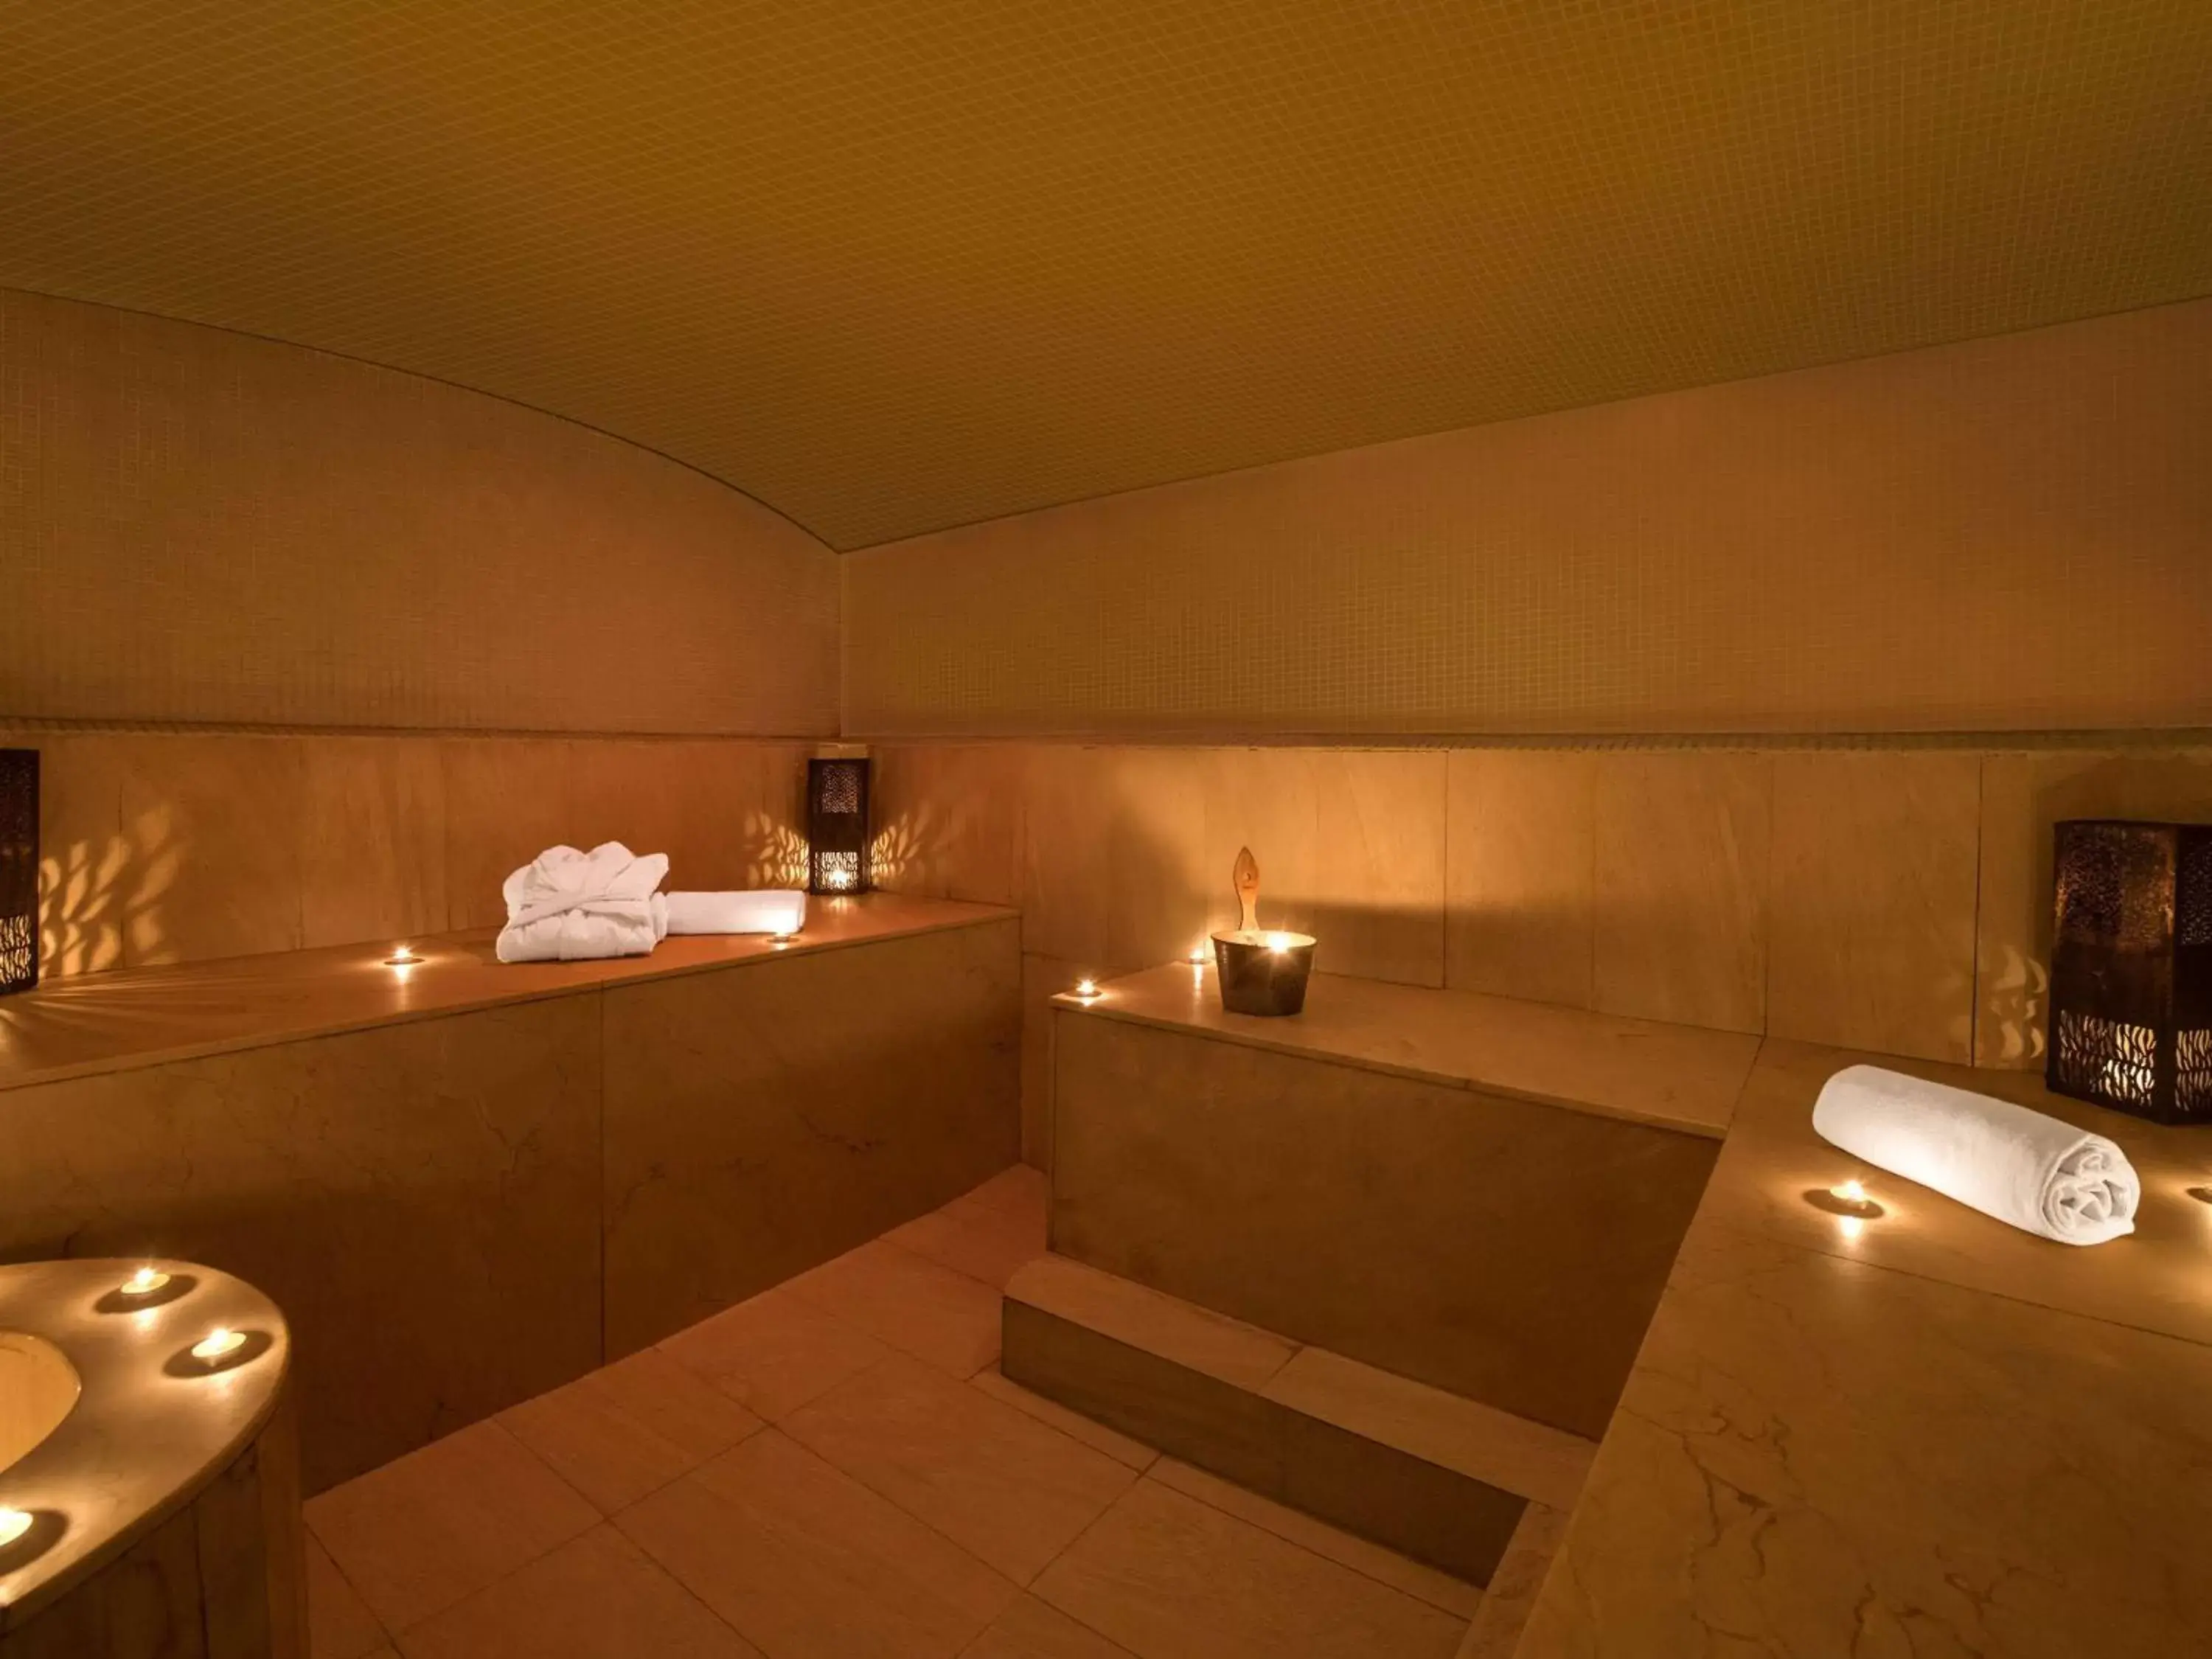 Spa and wellness centre/facilities, Bathroom in Mövenpick Hotel Casablanca